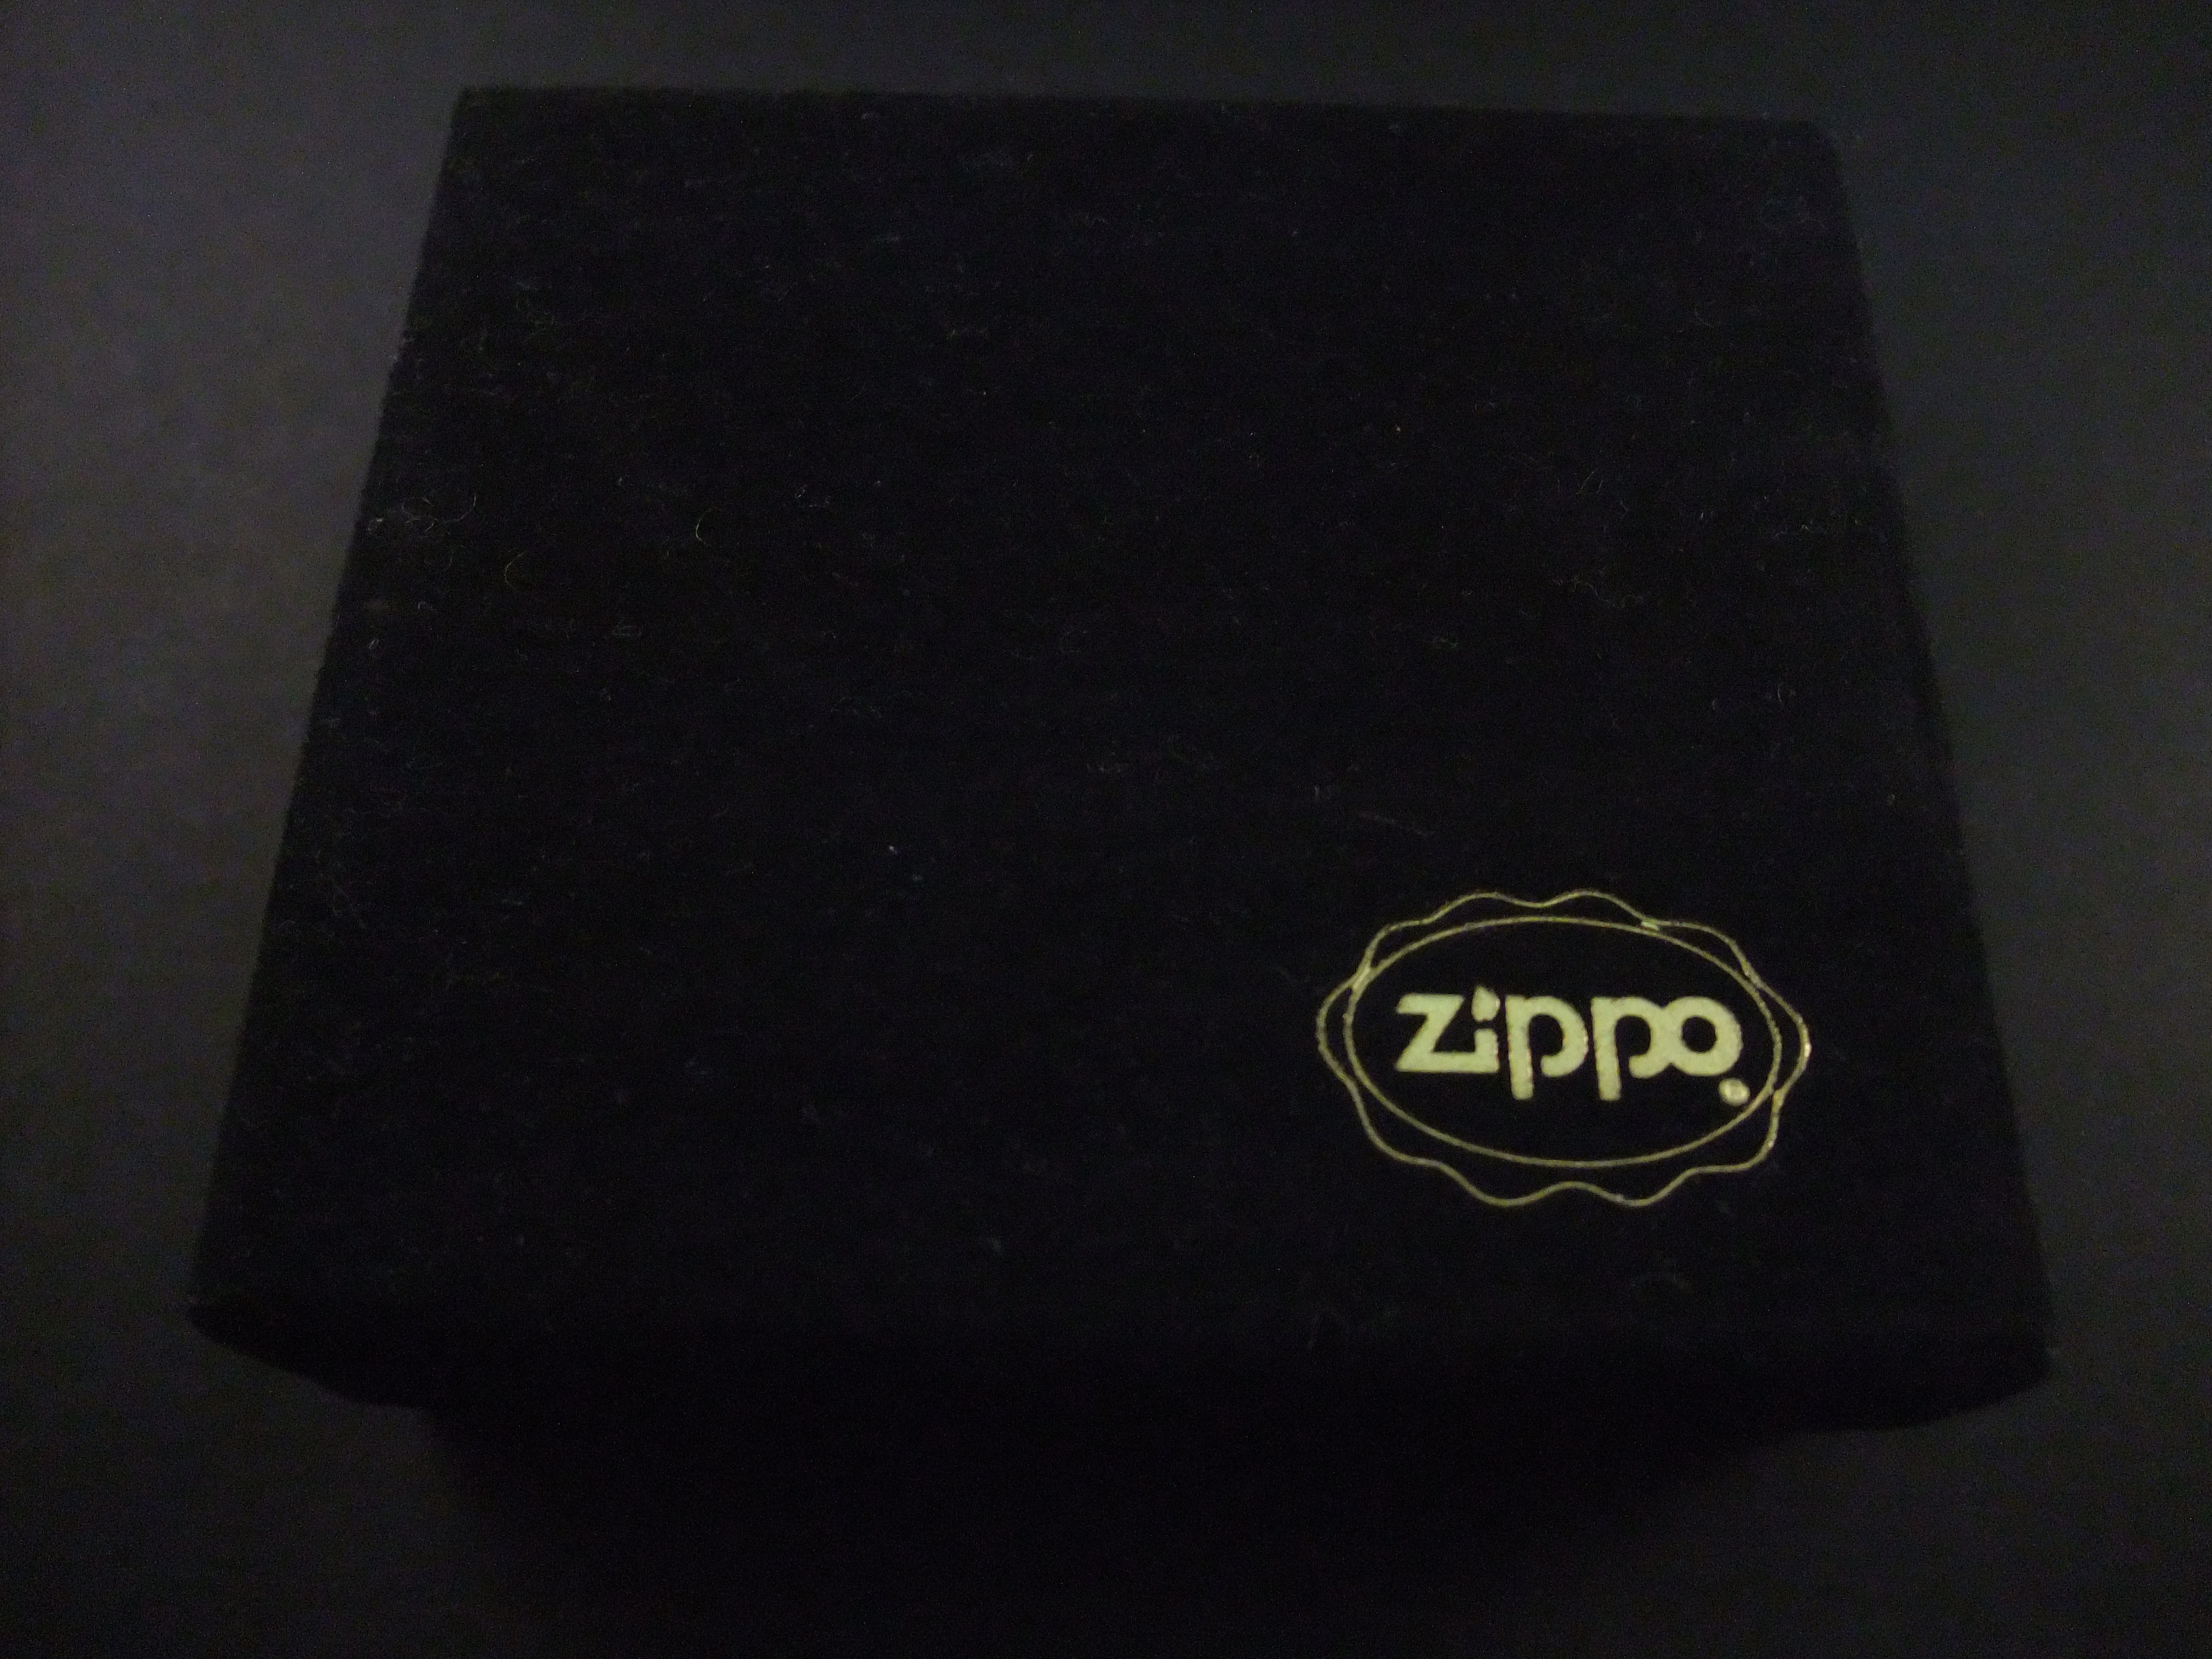 Zippo producent van benzine-aanstekers origineel zakmes in origine verpakking